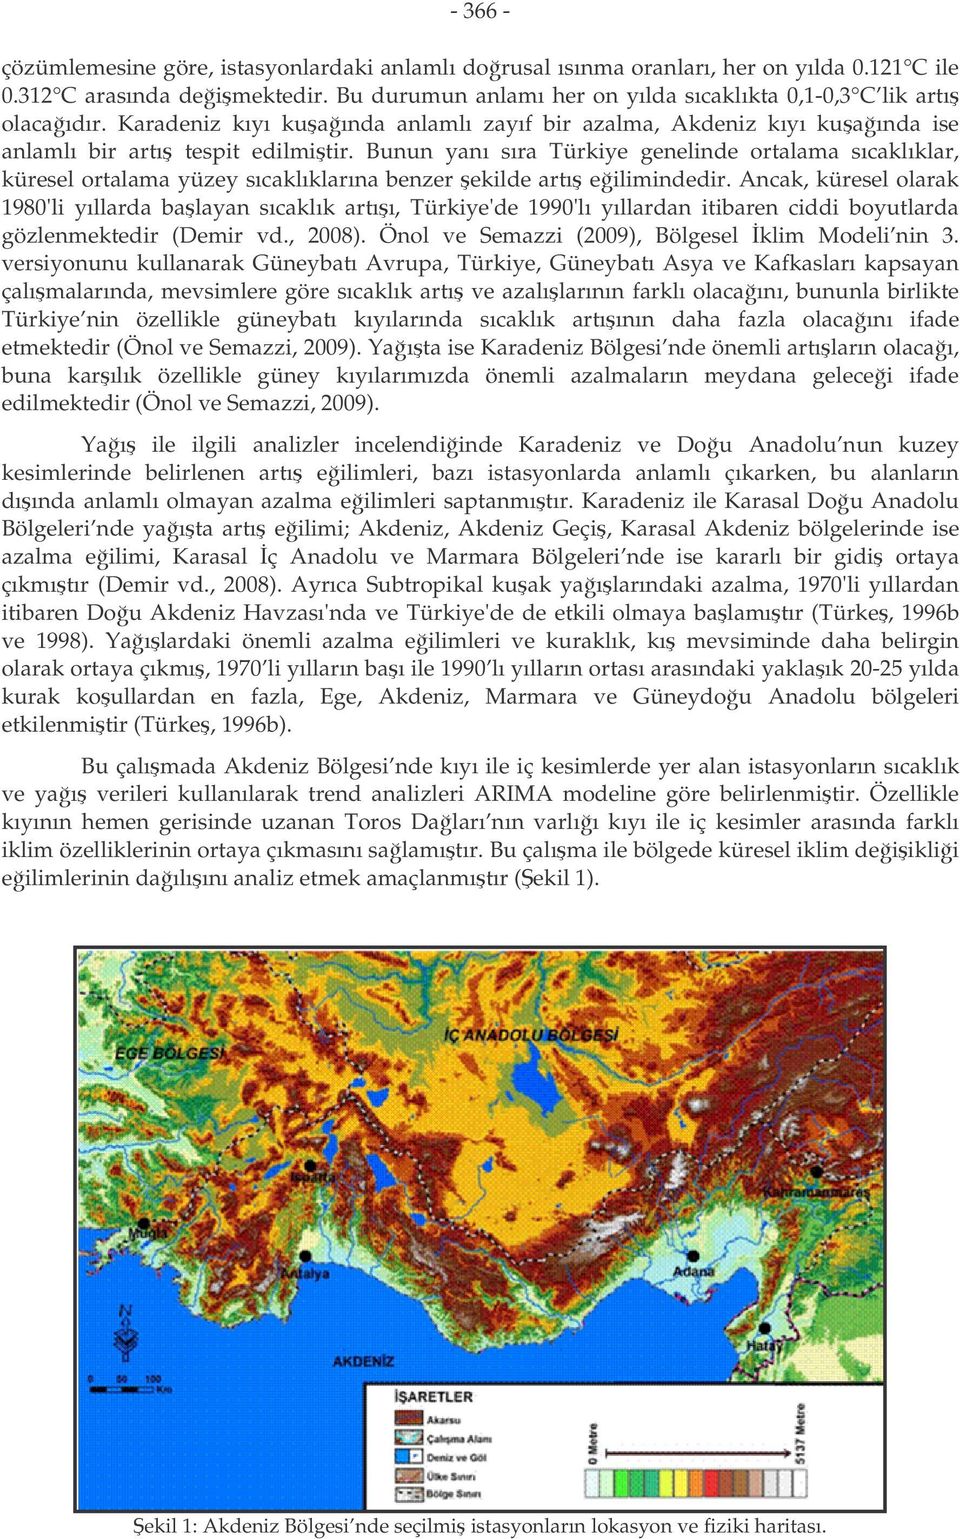 Anck, küresel olrk 1980'li yıllrd blyn sıcklık rıı, Türkiye'de 1990'lı yıllrdn iibren ciddi boyulrd gözlenmekedir (Demir vd., 2008). Önol ve Semzzi (2009), Bölgesel klim Modeli nin 3.